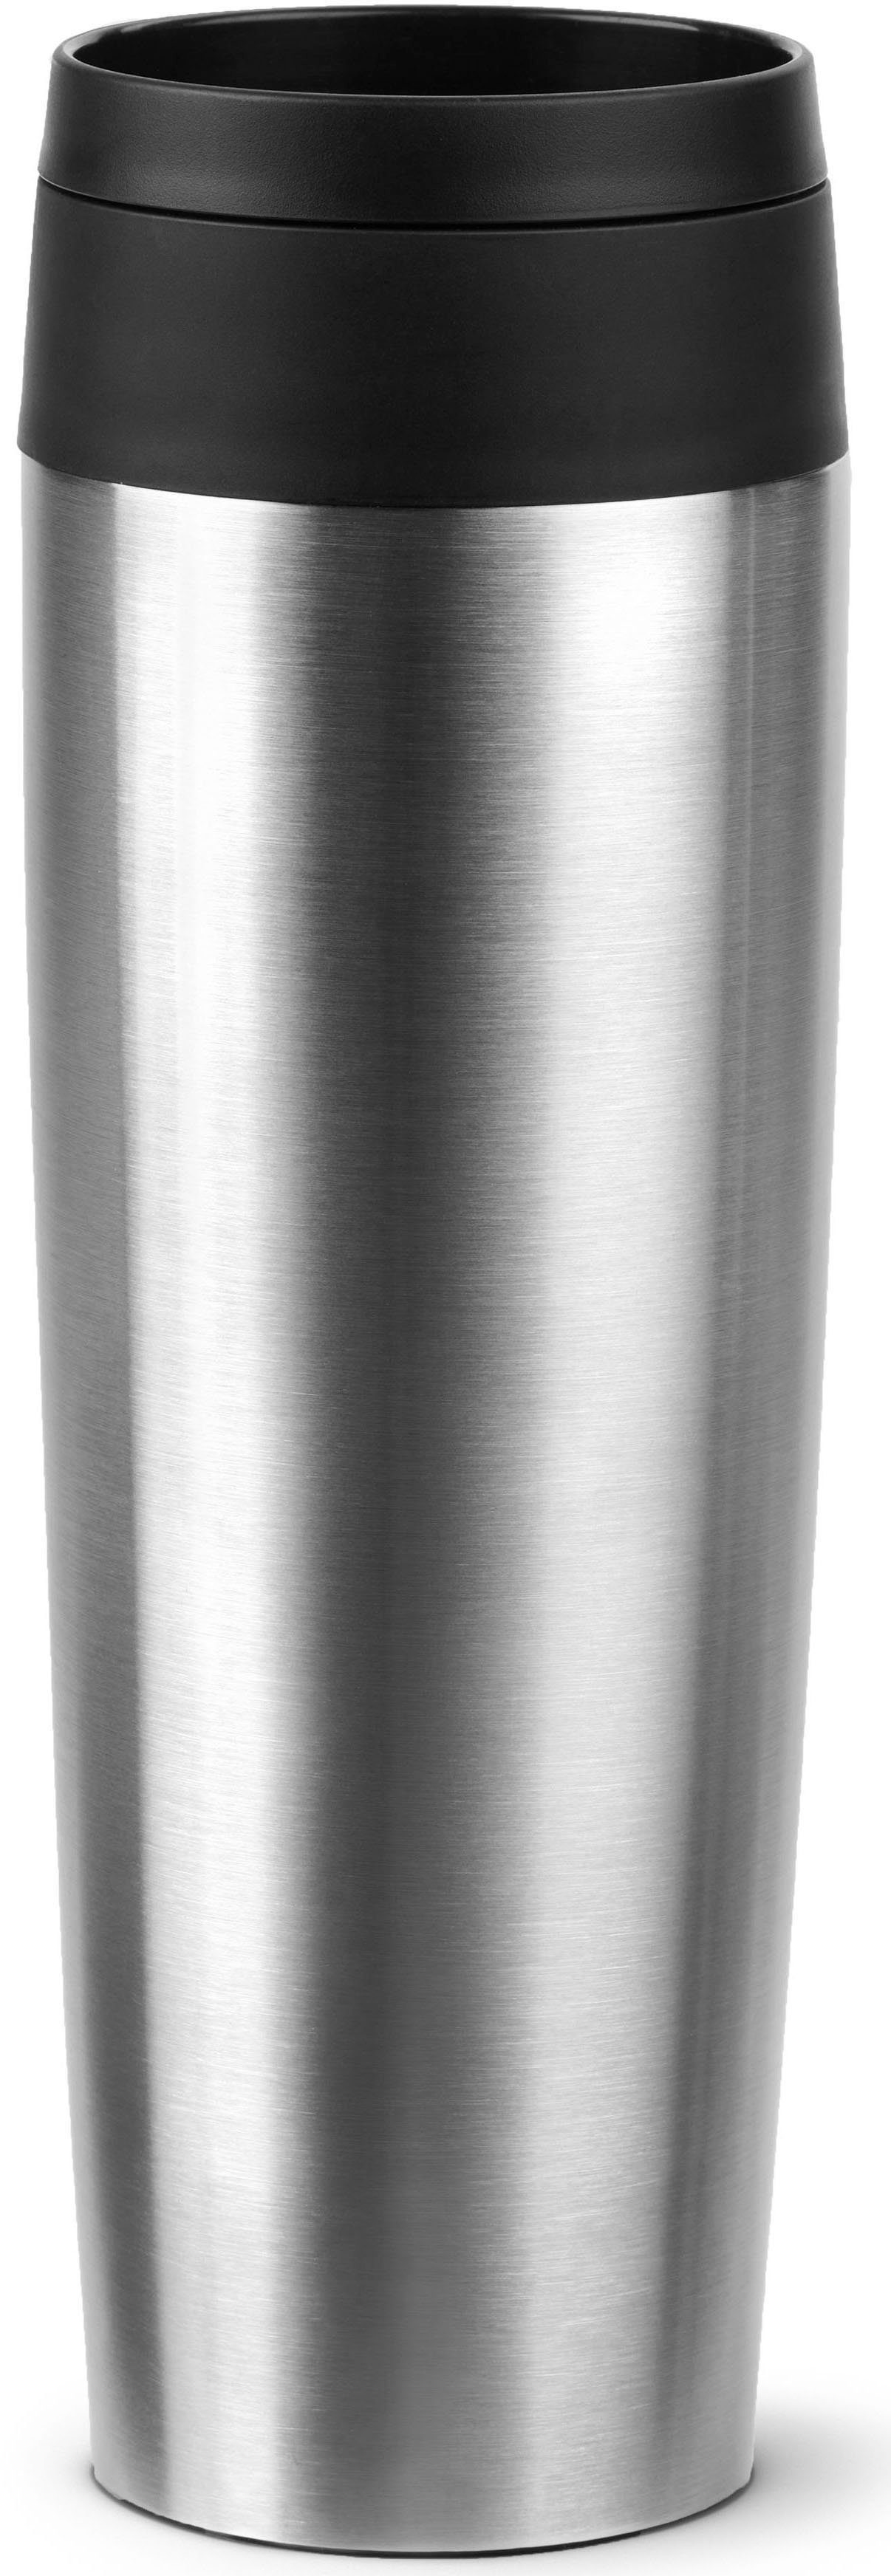 Emsa Thermobecher Travel Mug Classic, mit 360°-Trinköffnung, Edelstahl, Kunststoff, Silikon, 4h heiß, 8h kalt - 360 ml / 6h heiß, 12h kalt - 500 ml, 100% dicht